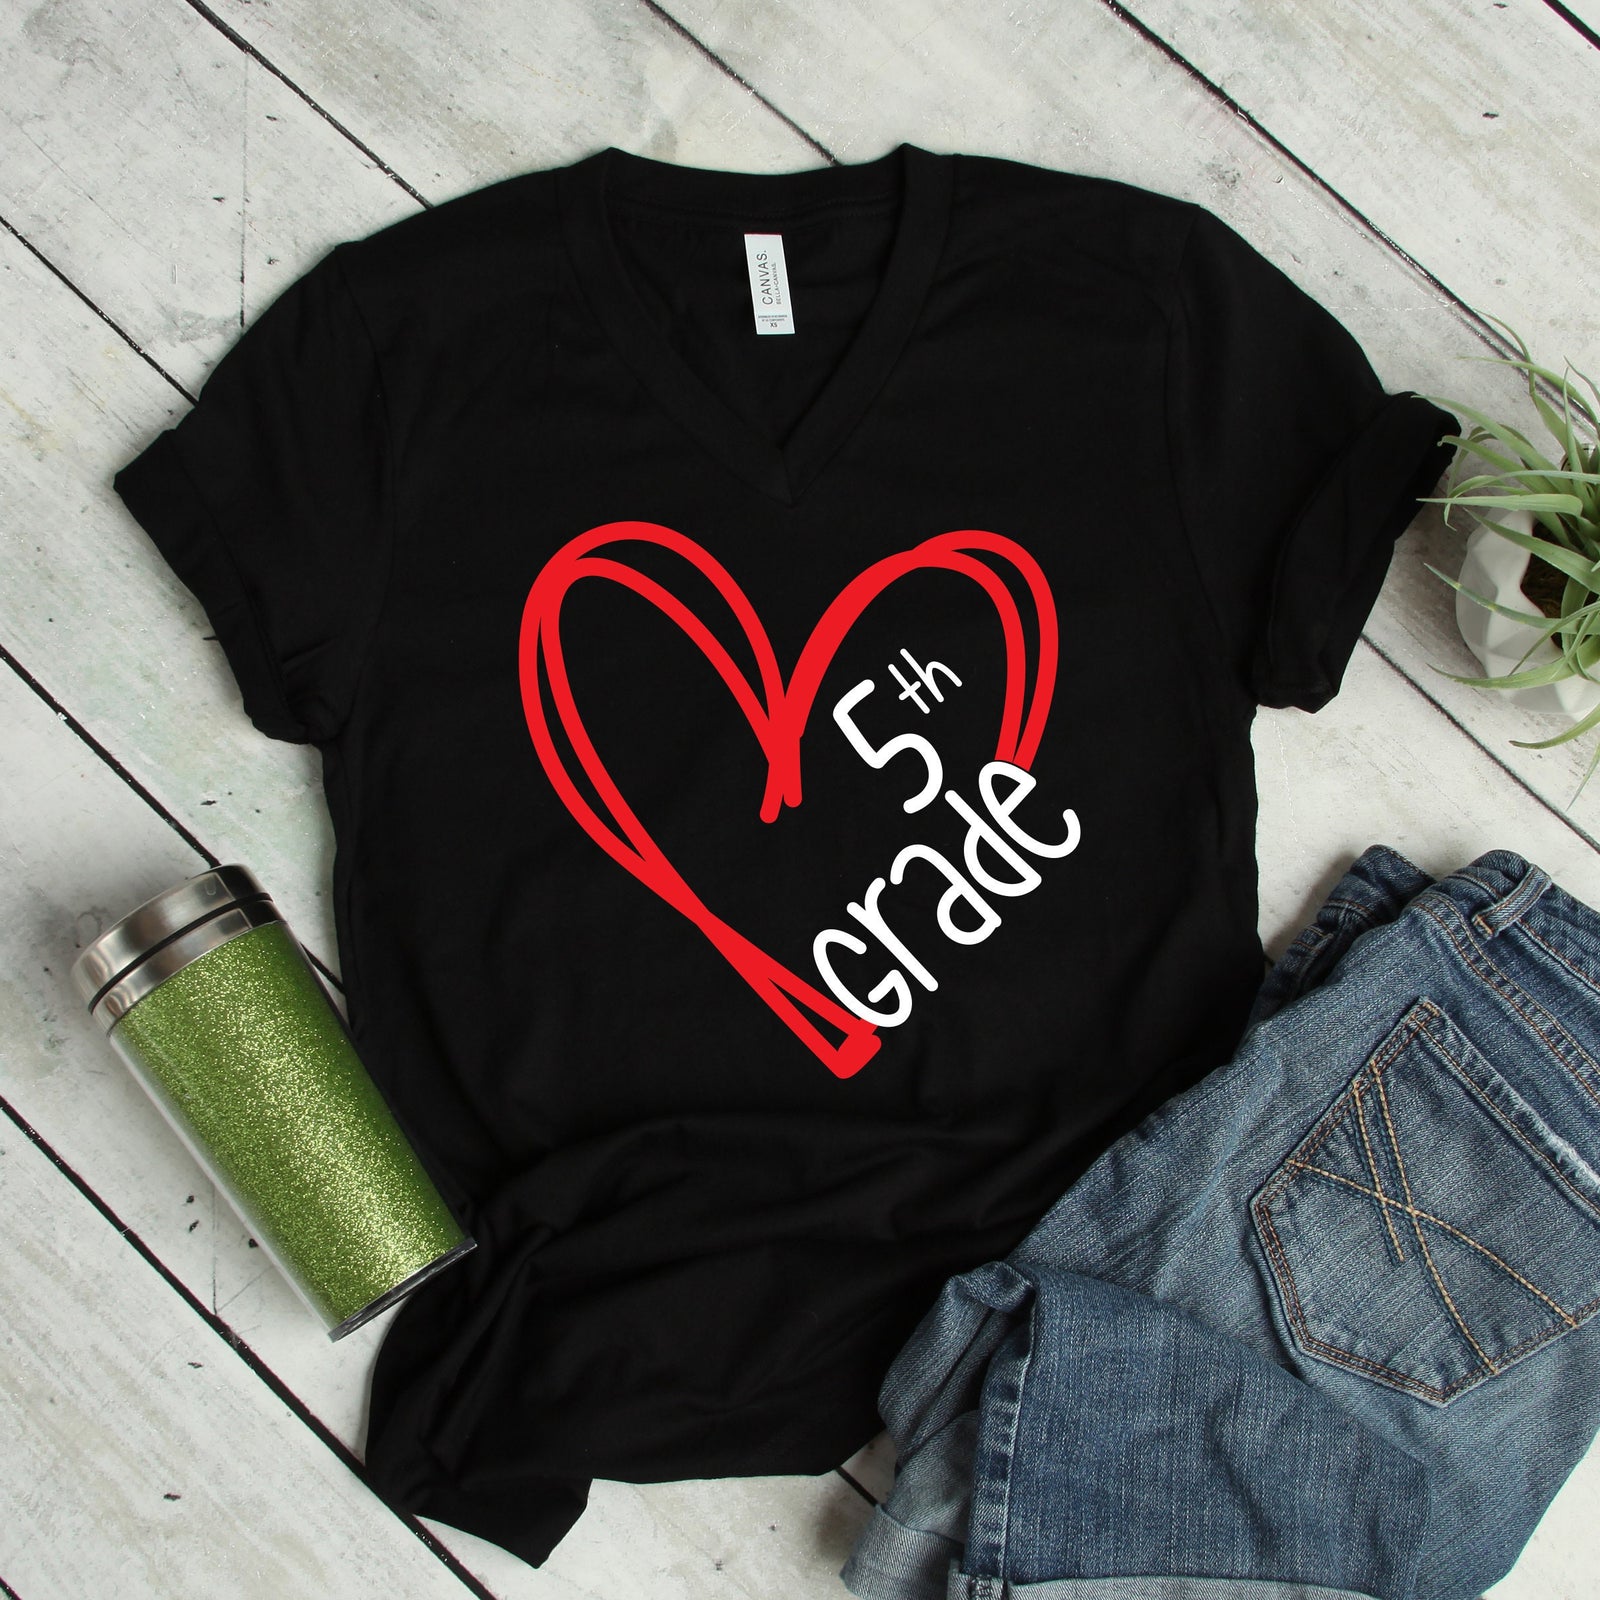 Grade Level Teacher Adult T Shirts - Back to School - PreK - Kindergarten - First - Fifth Grade - Scribble Heart